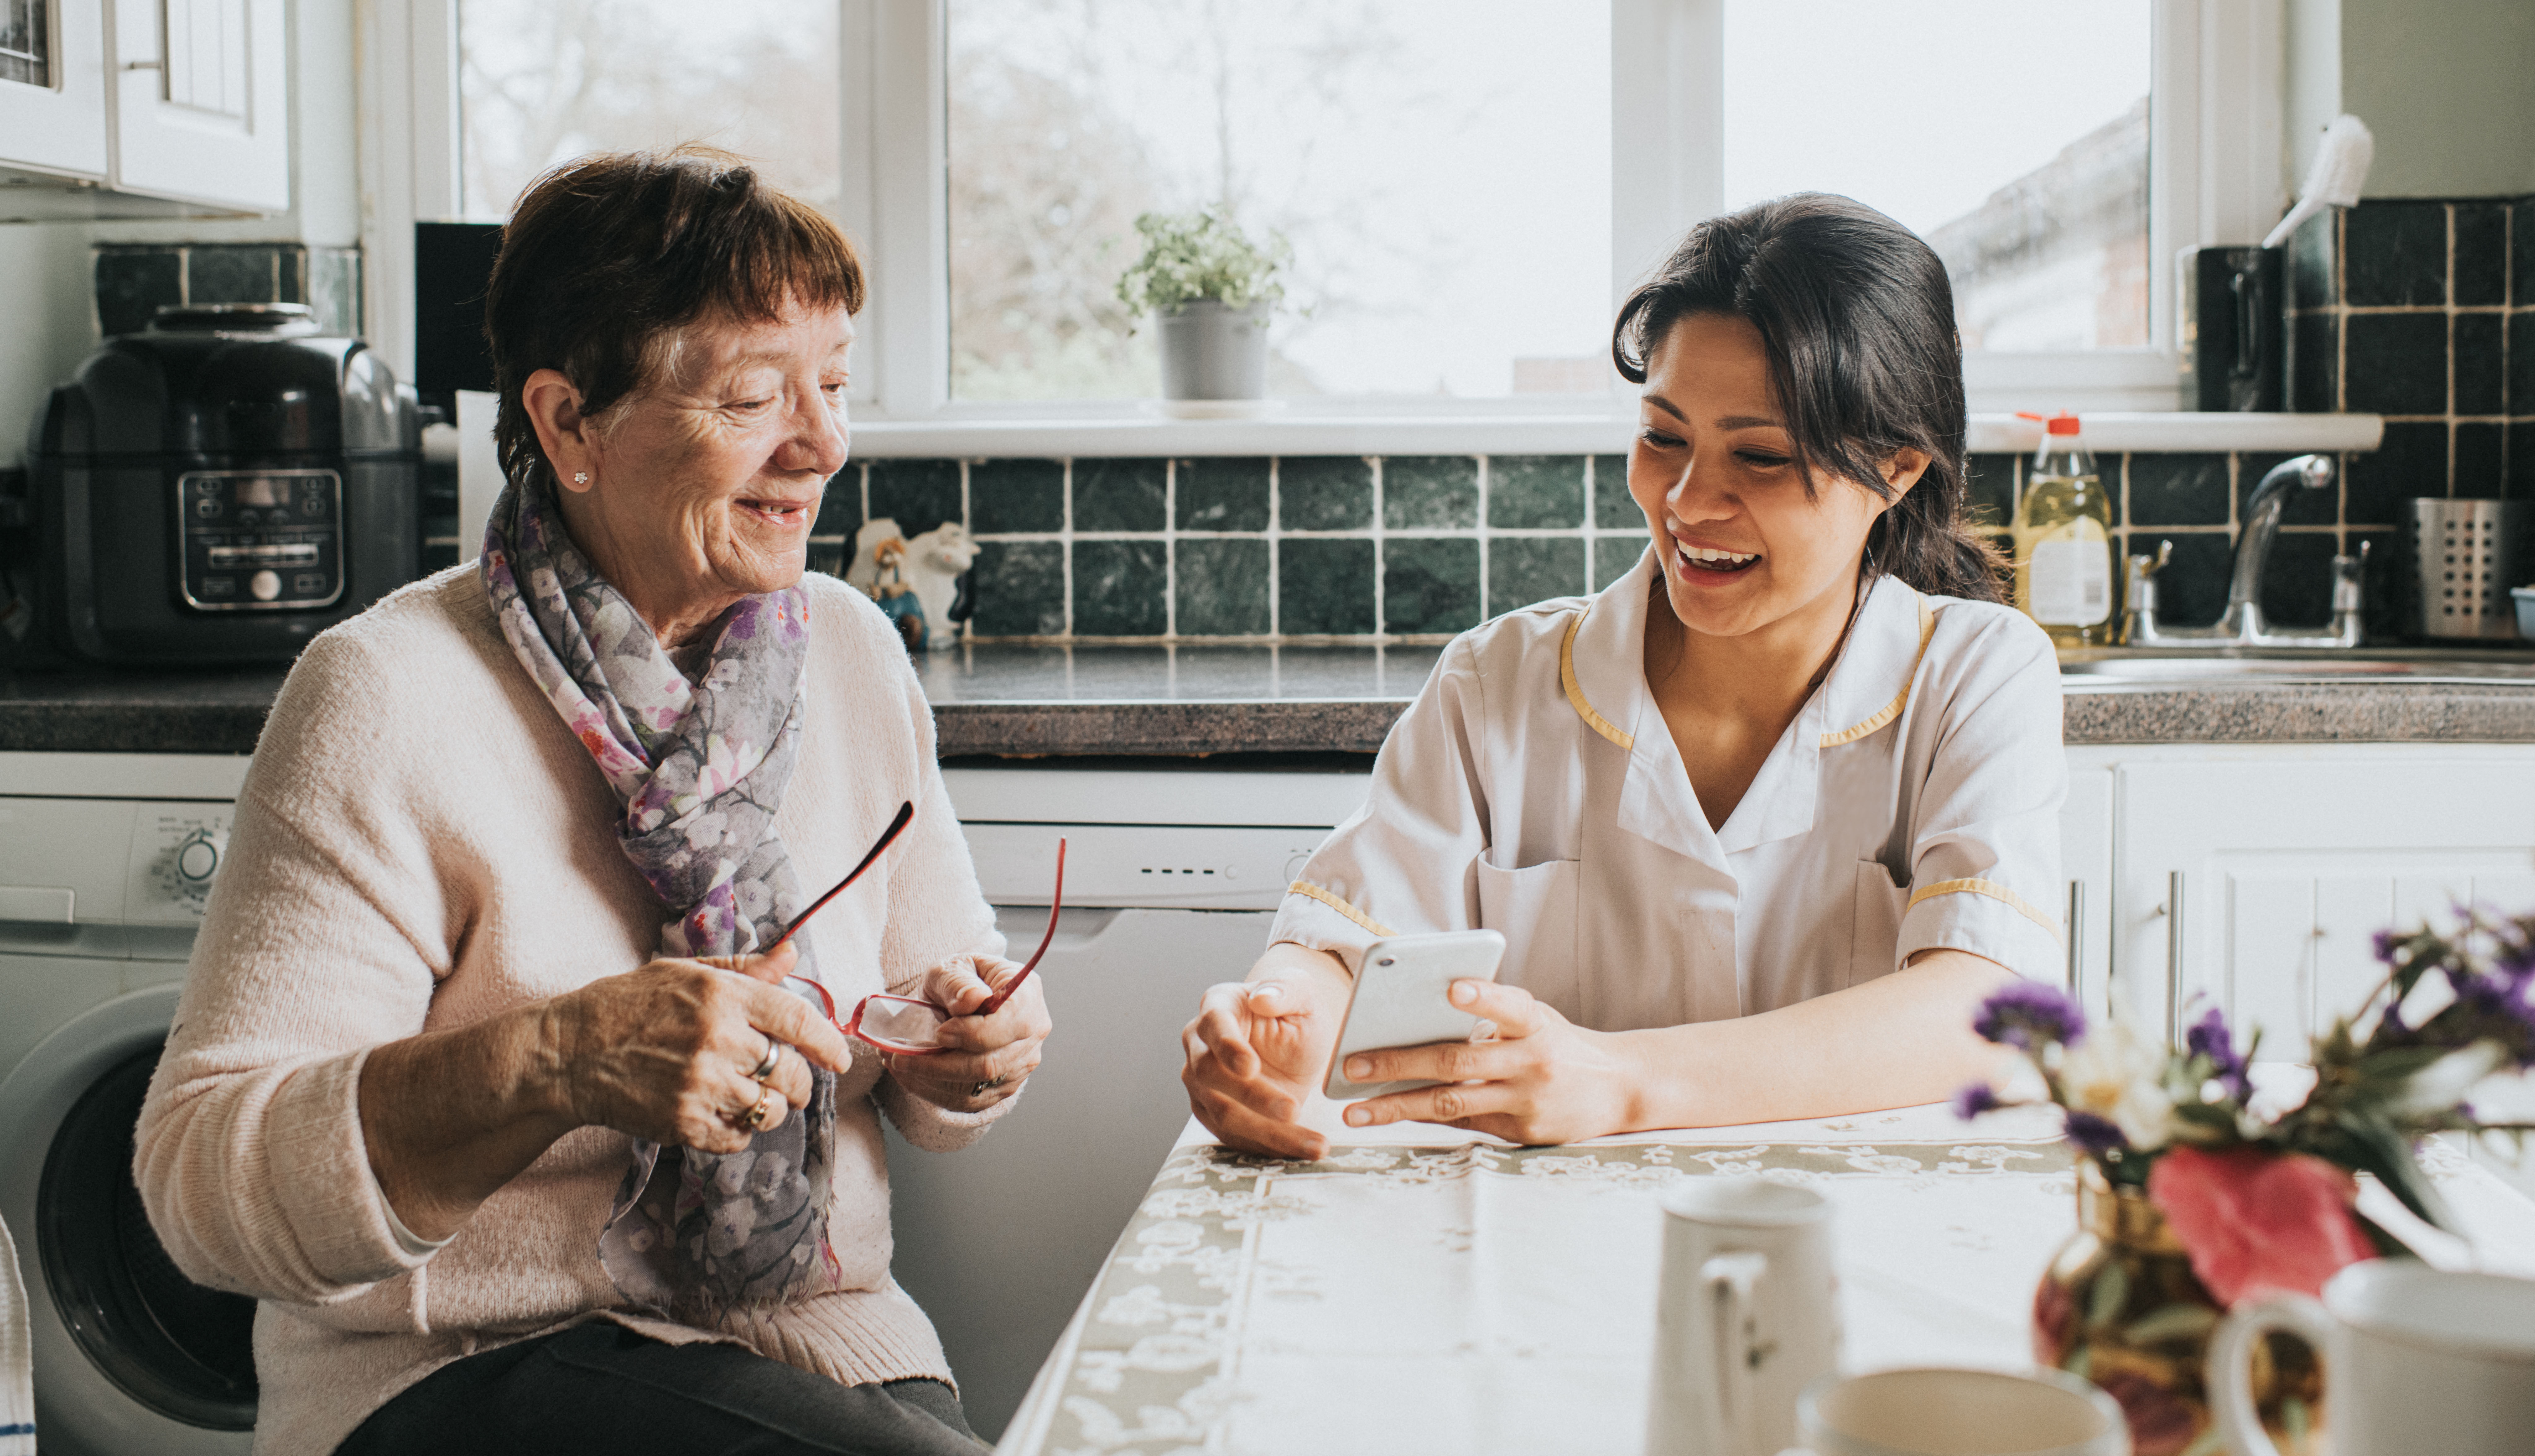 Una cuidadora sonriente se sienta junto a una mujer mayor en una mesa de cocina. Ella ayuda a la mujer a usar un teléfono inteligente para realizar un pedido en línea.